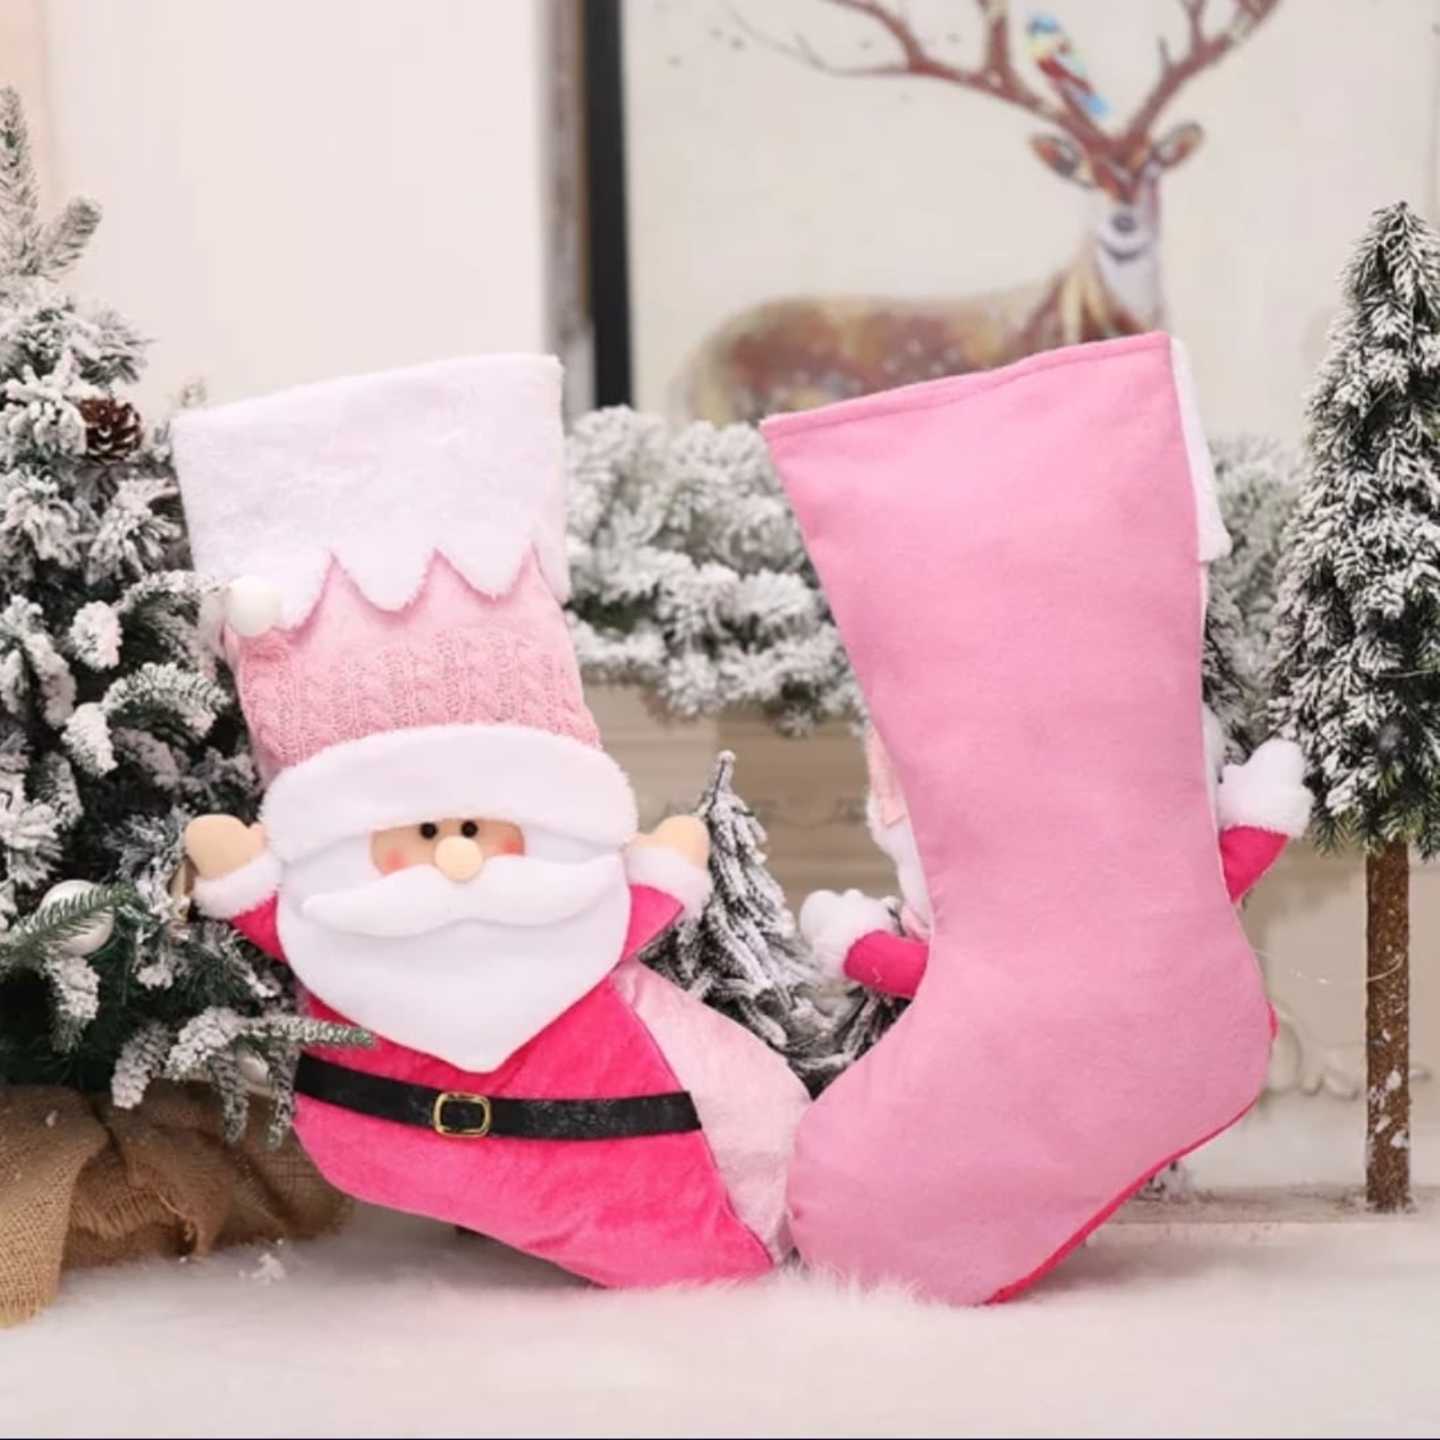 Personalised Stockings - Jingle Santa